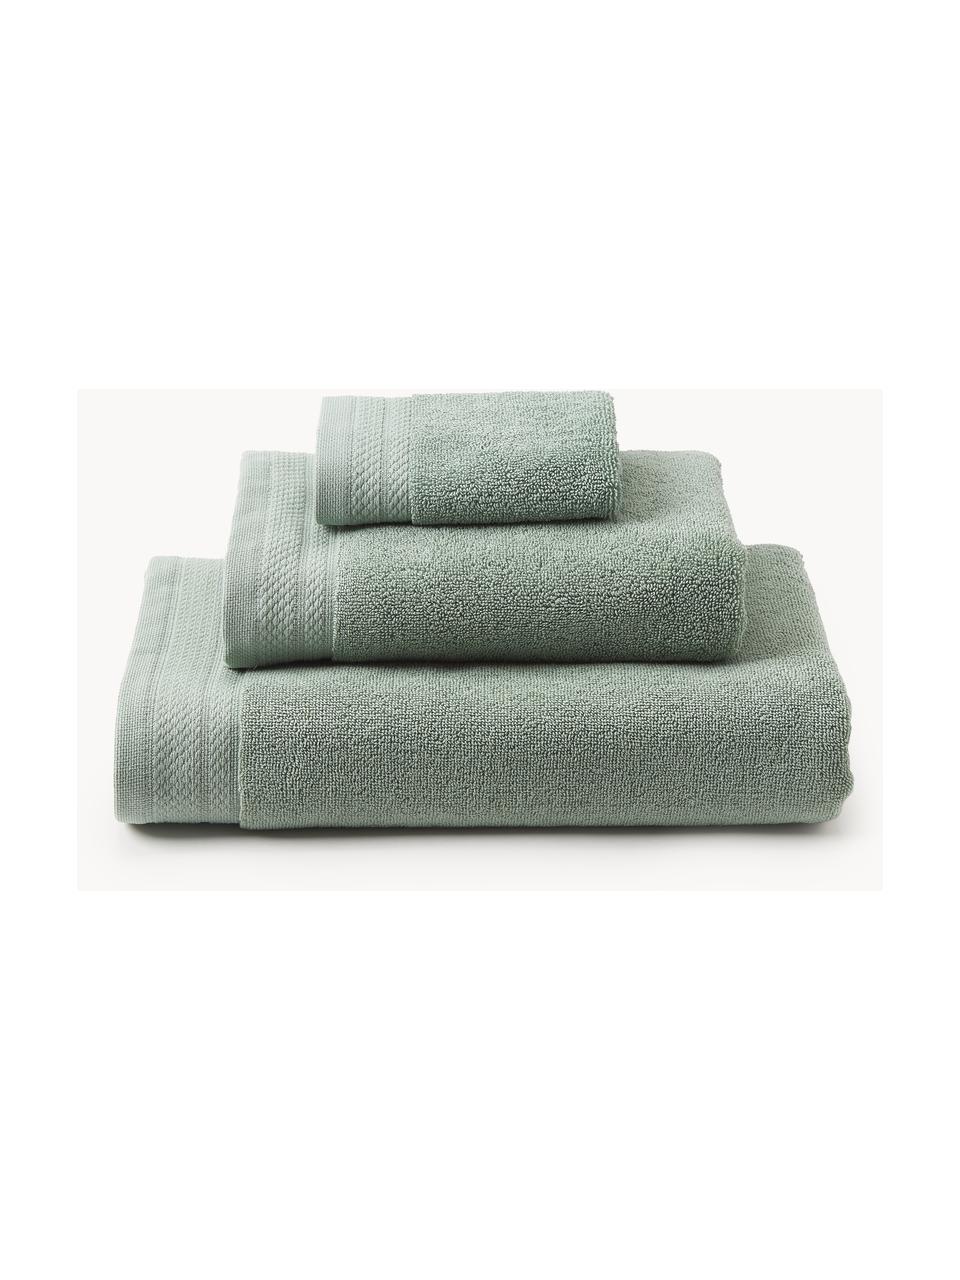 Lot de serviettes de bain en coton bio Premium, tailles variées, Vert sauge, 3 éléments (1 serviette invité, 1 serviette de toilette et 1 drap de bain)